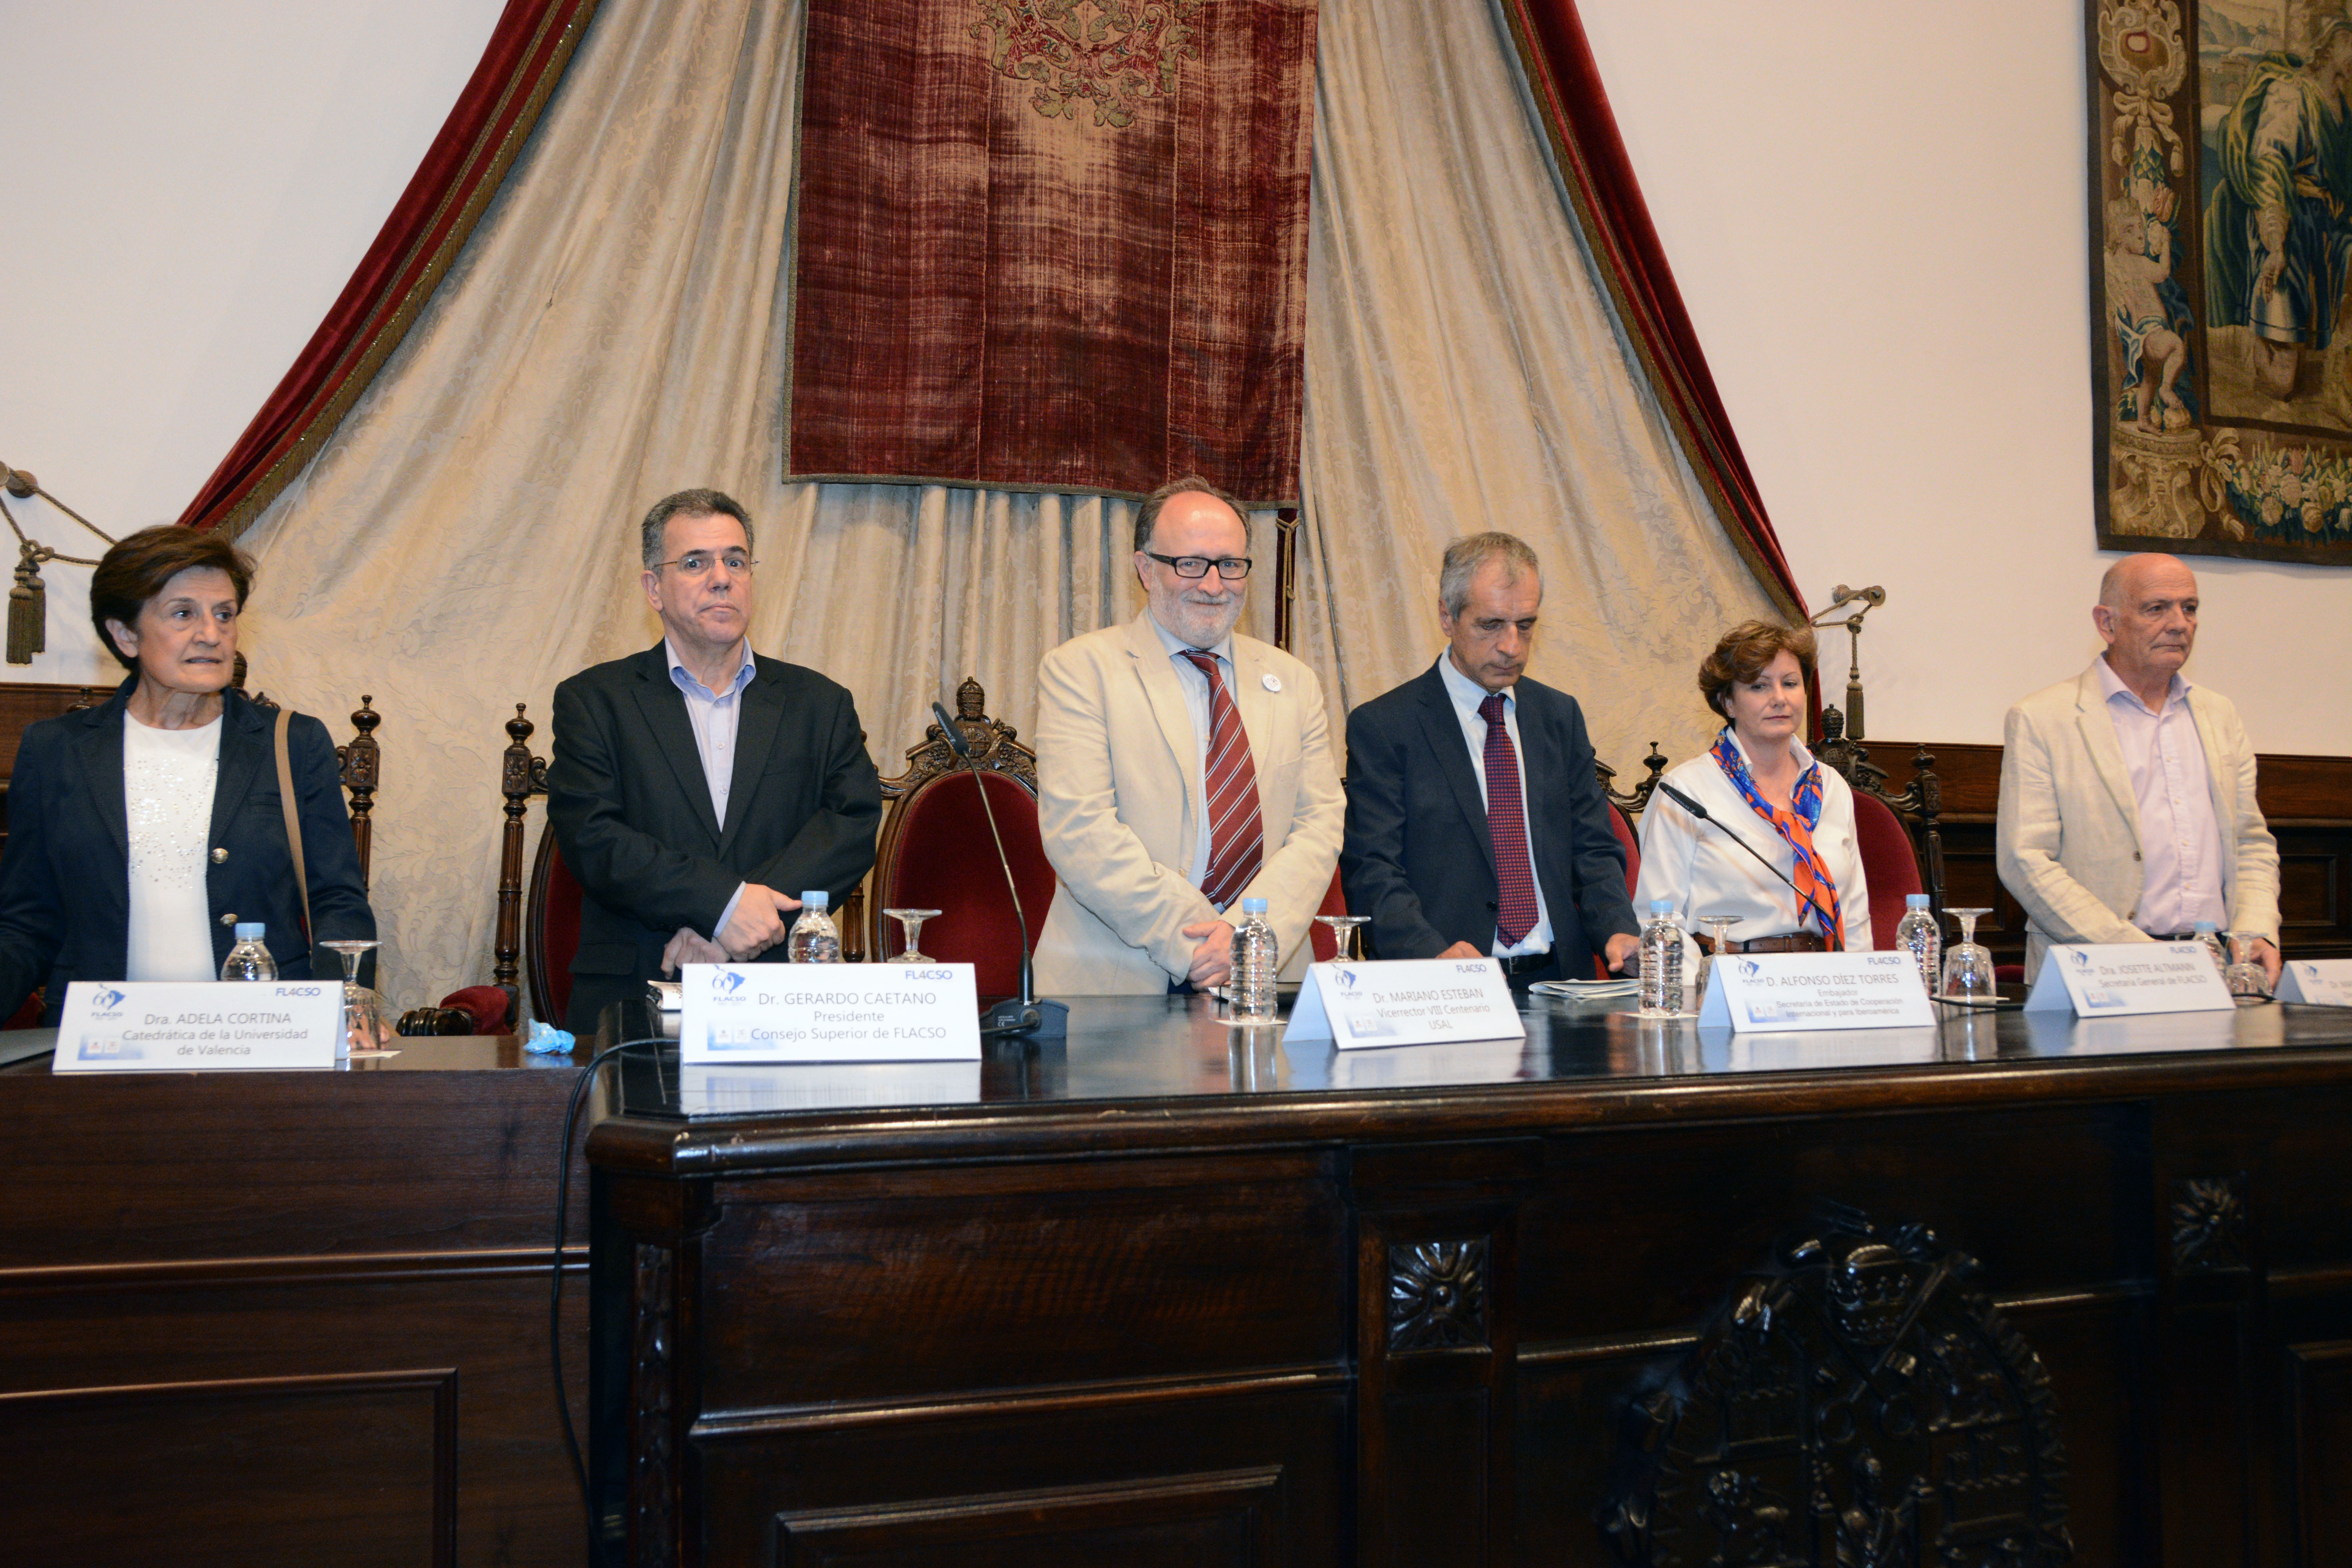 El vicerrector para la Conmemoración para el VIII Centenario inaugura el IV Congreso Latinoamericano y Caribeño de Ciencias Sociales organizado por FLACSO España